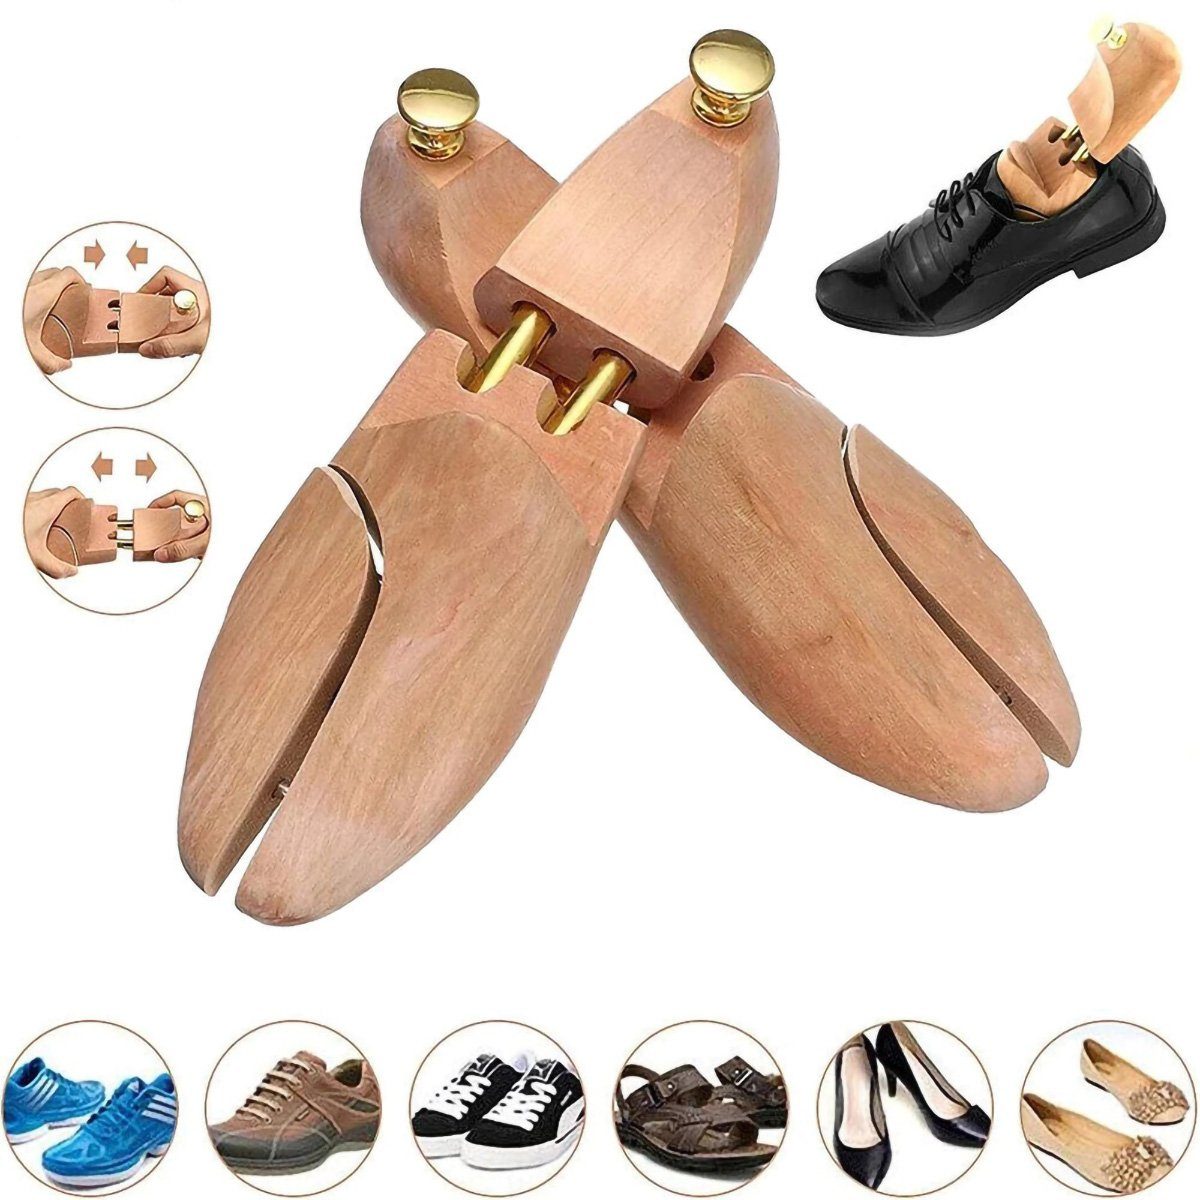 yozhiqu Schuhspanner Herrenschuhspanner aus massivem Holz, um die Schuhe in Form zu halten, Anti-Falten- und nicht verformbare Schuhspanner für Schuhe